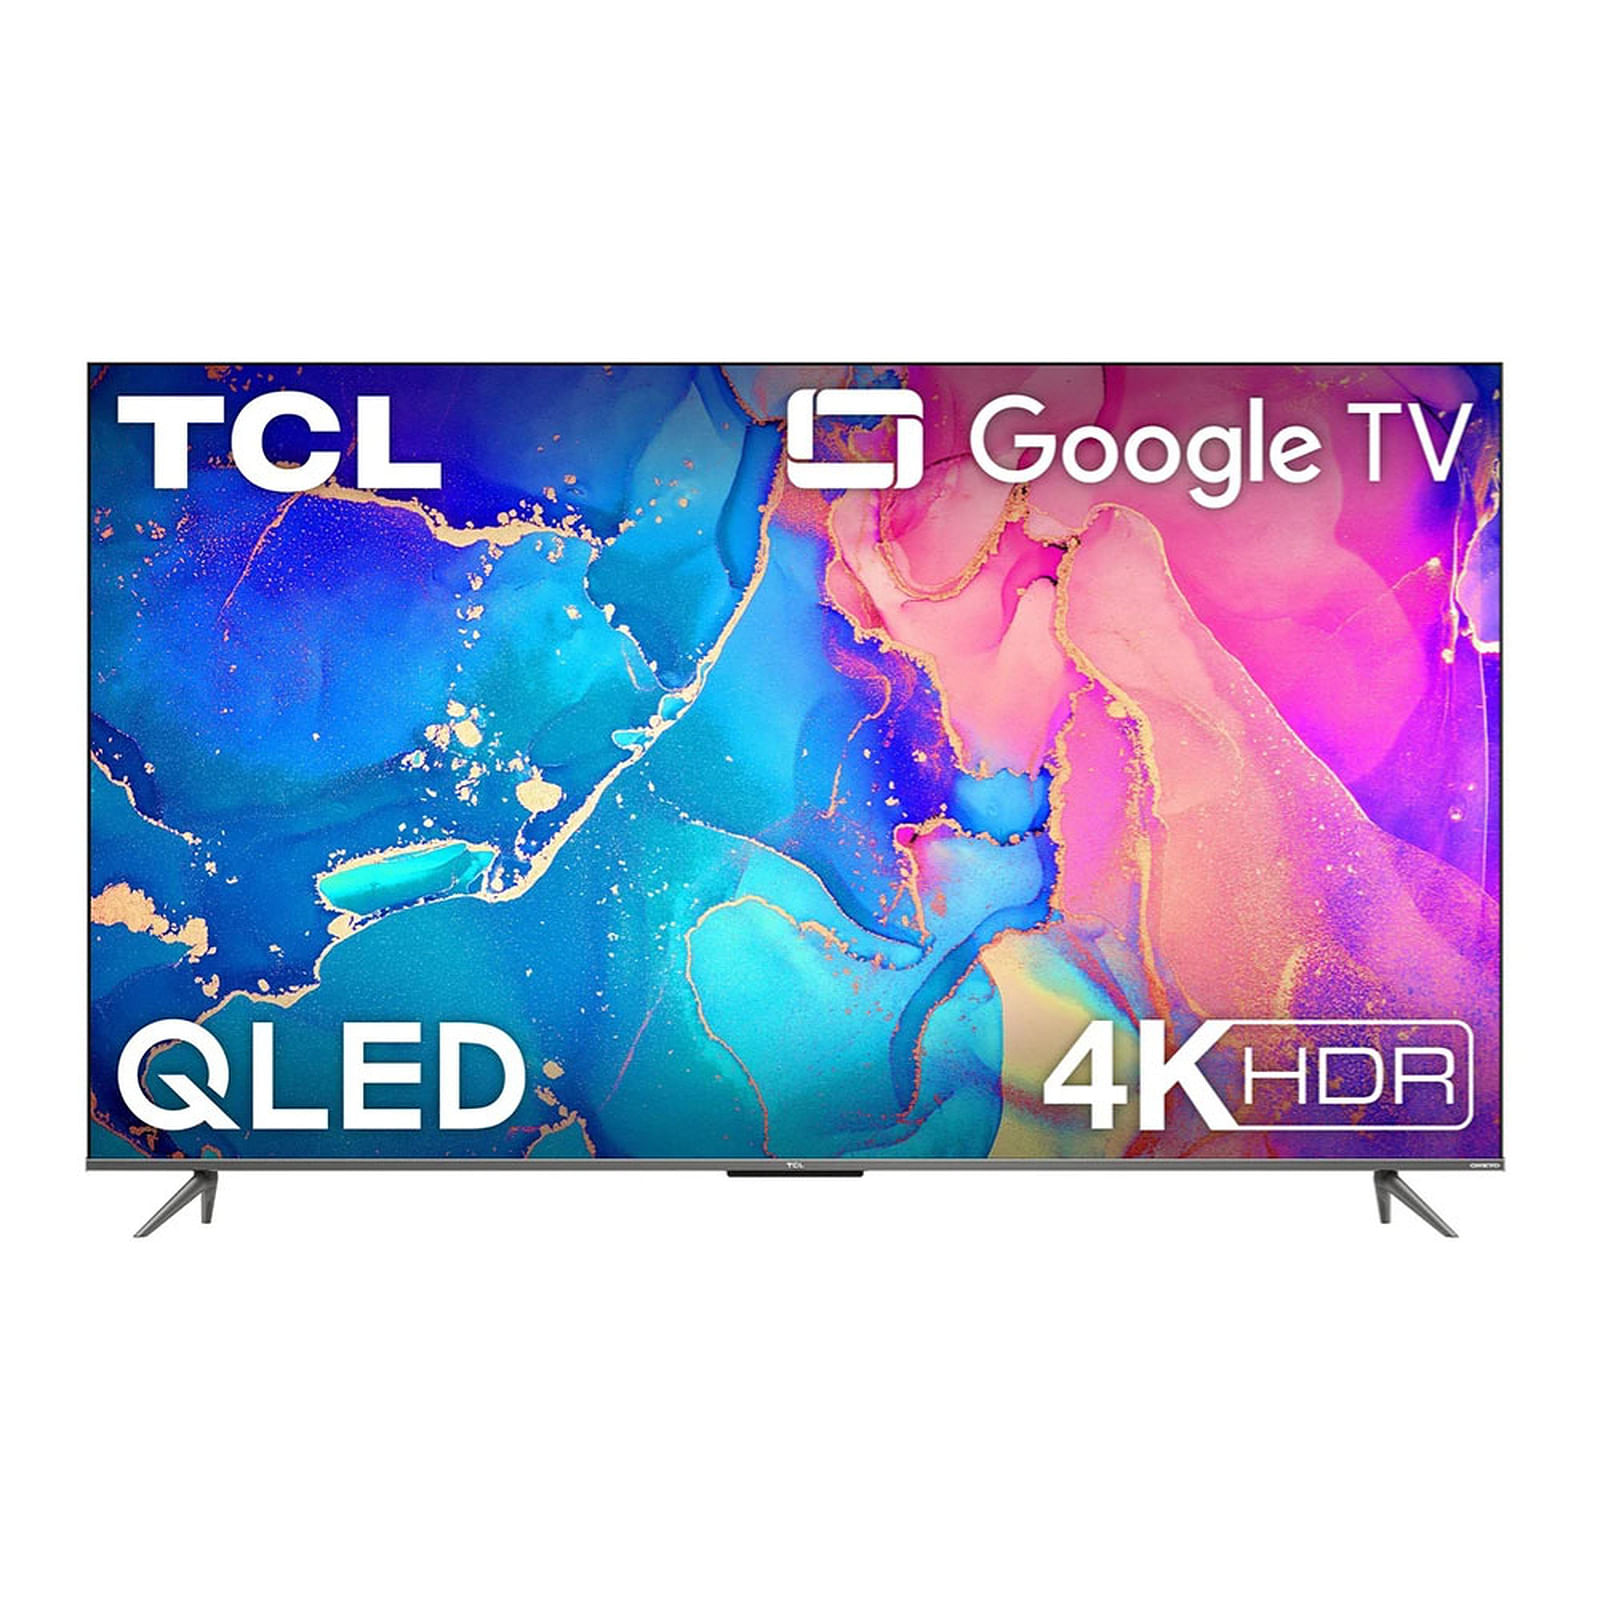 TV TCL 50' UHD 4K SMART HDR GOOGLE TV MANDO DE VOZ LIBRE TIENDA AMIGA